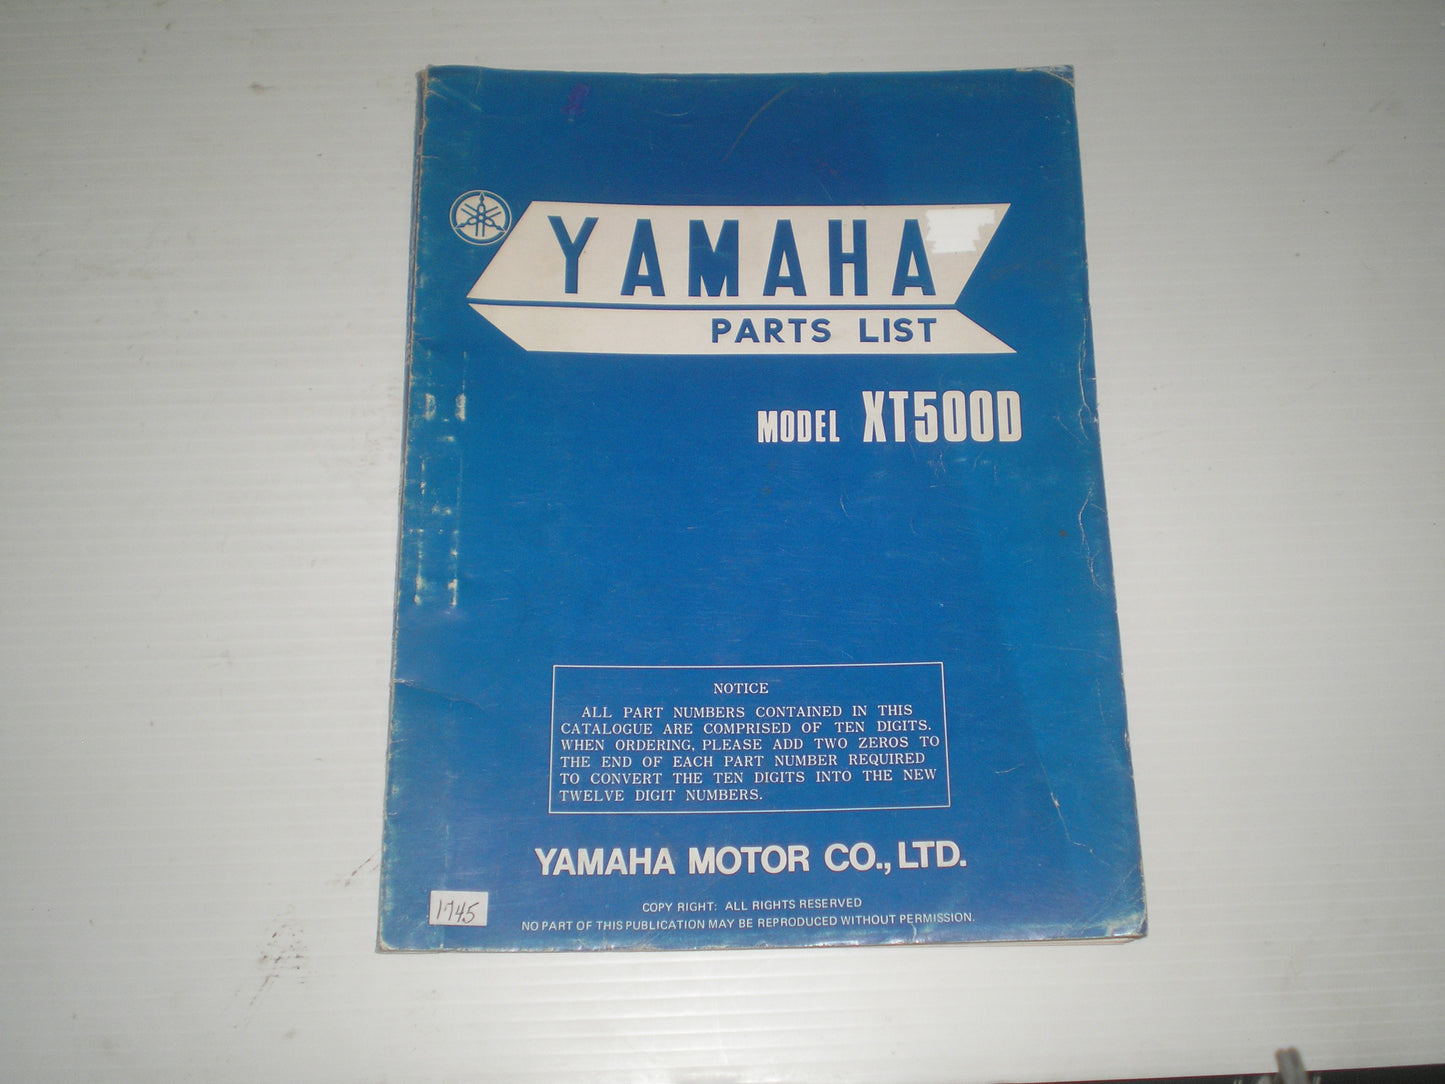 YAMAHA XT500 D 1977  Parts List / Catalogue  1T2-28198-60  LIT-10011-T2-00  #1745